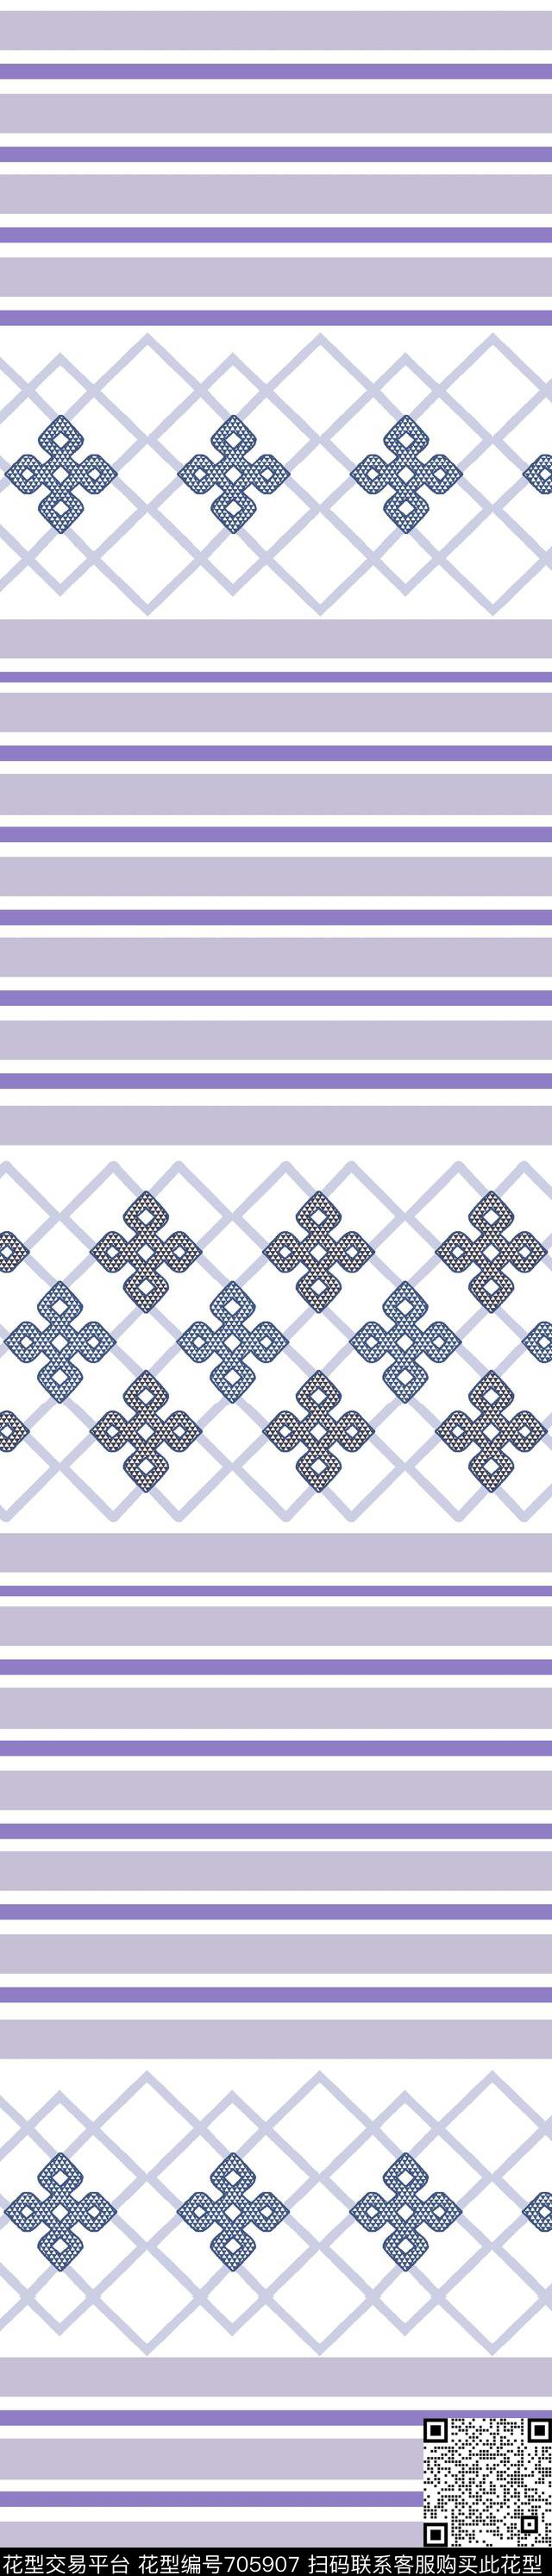 013.jpg - 705907 - 十字 几何 三角形 - 传统印花花型 － 窗帘花型设计 － 瓦栏